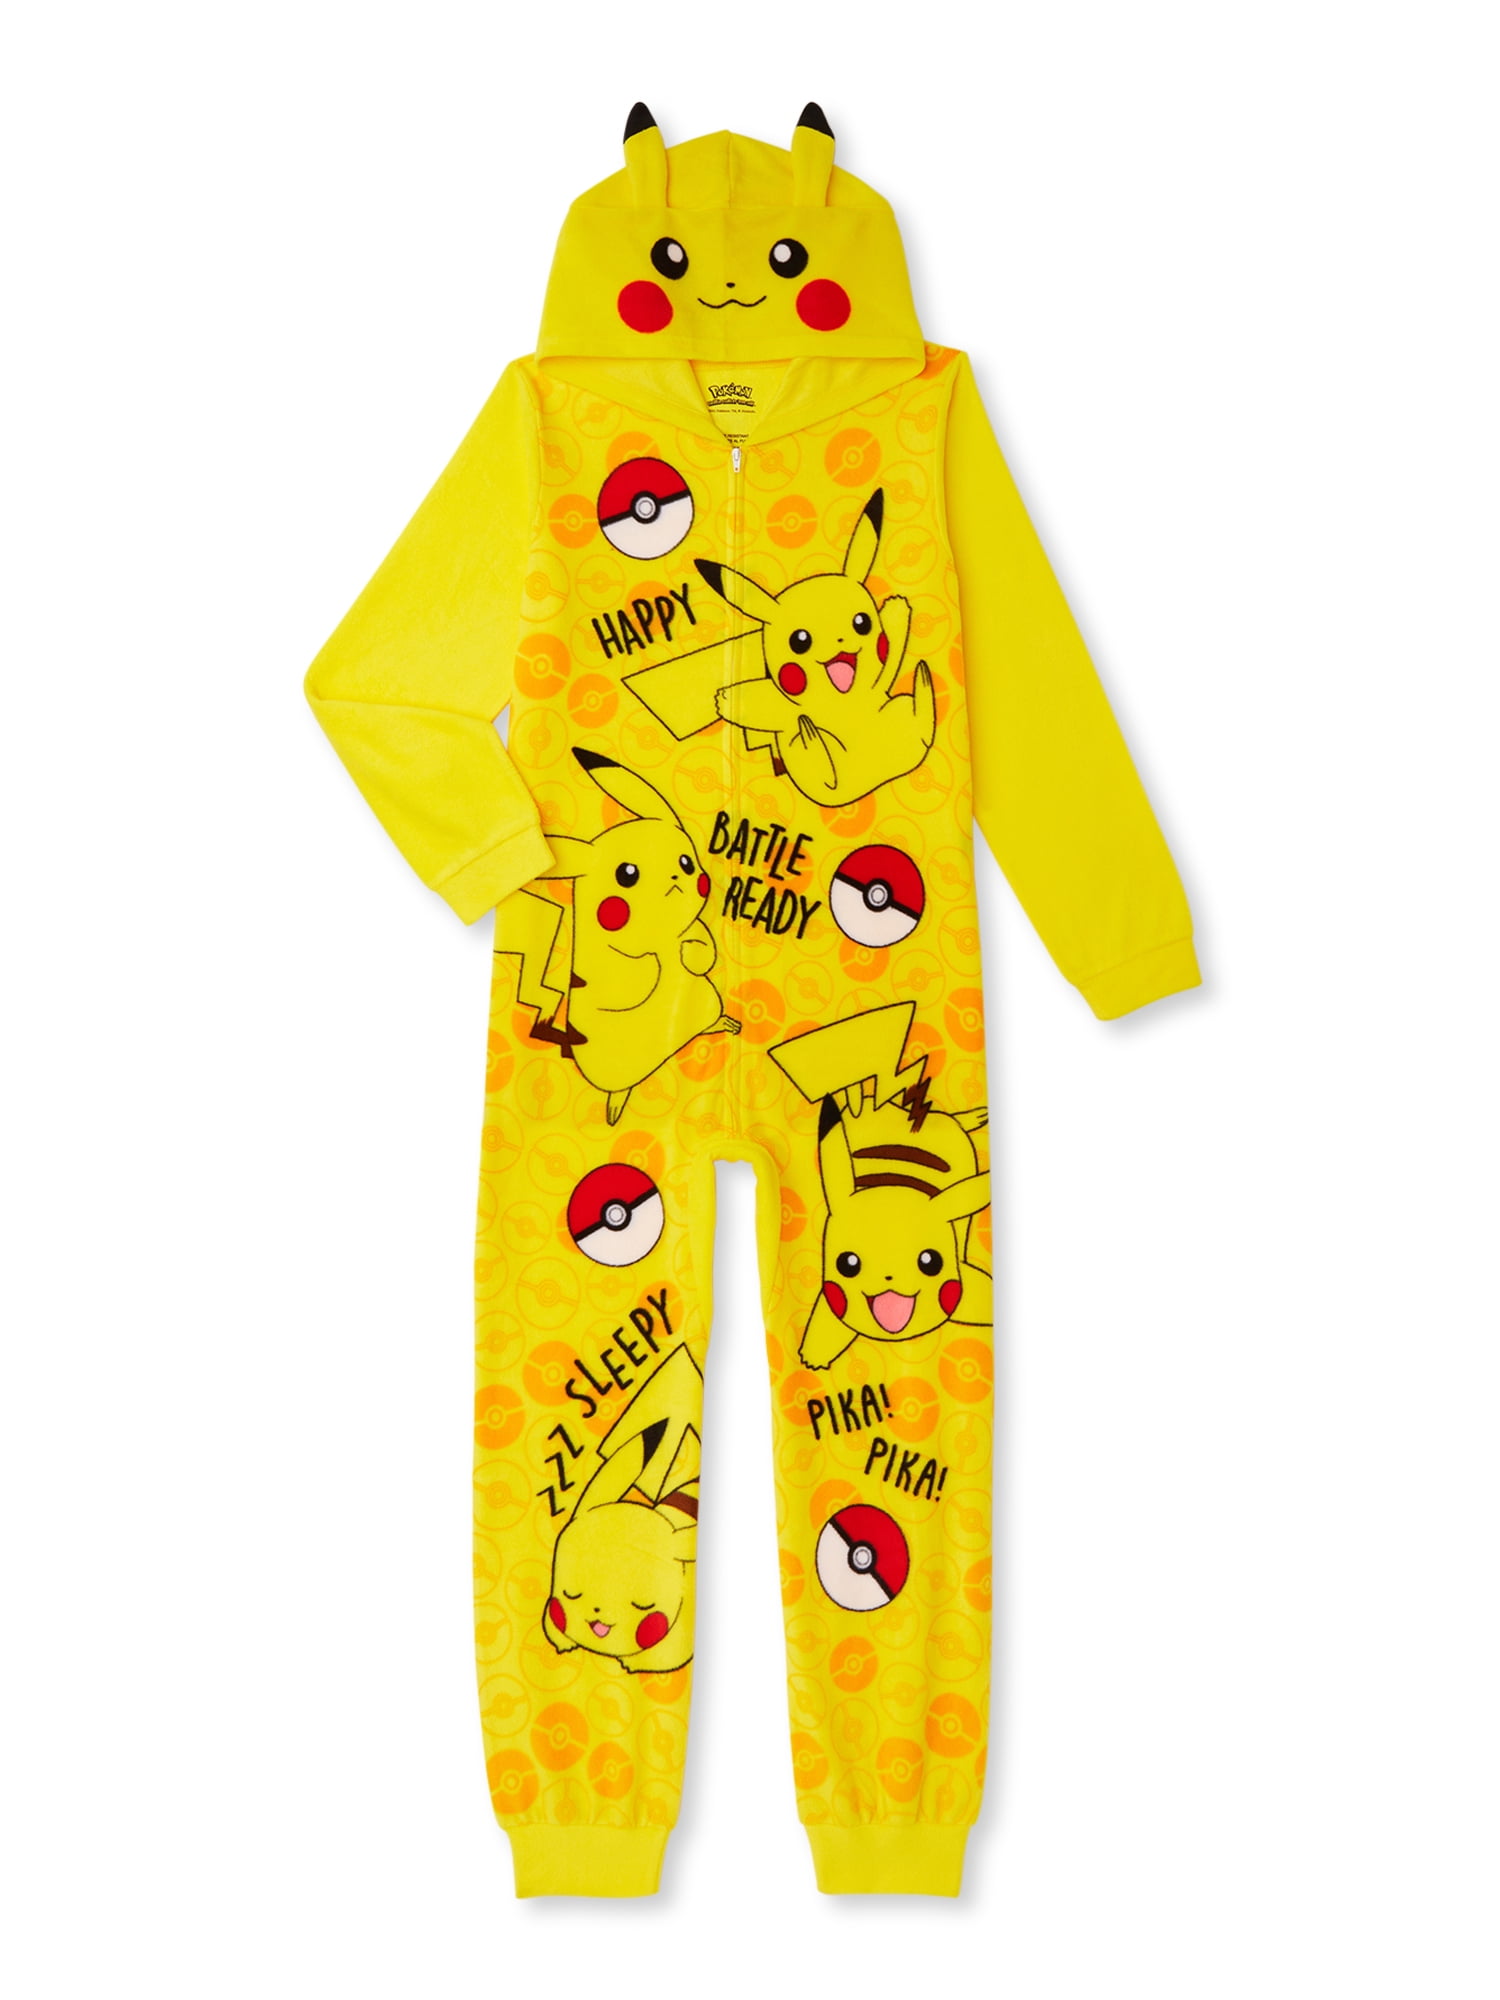 Pokemon Pikachu Boys Union Suit Pajamas 4-16 